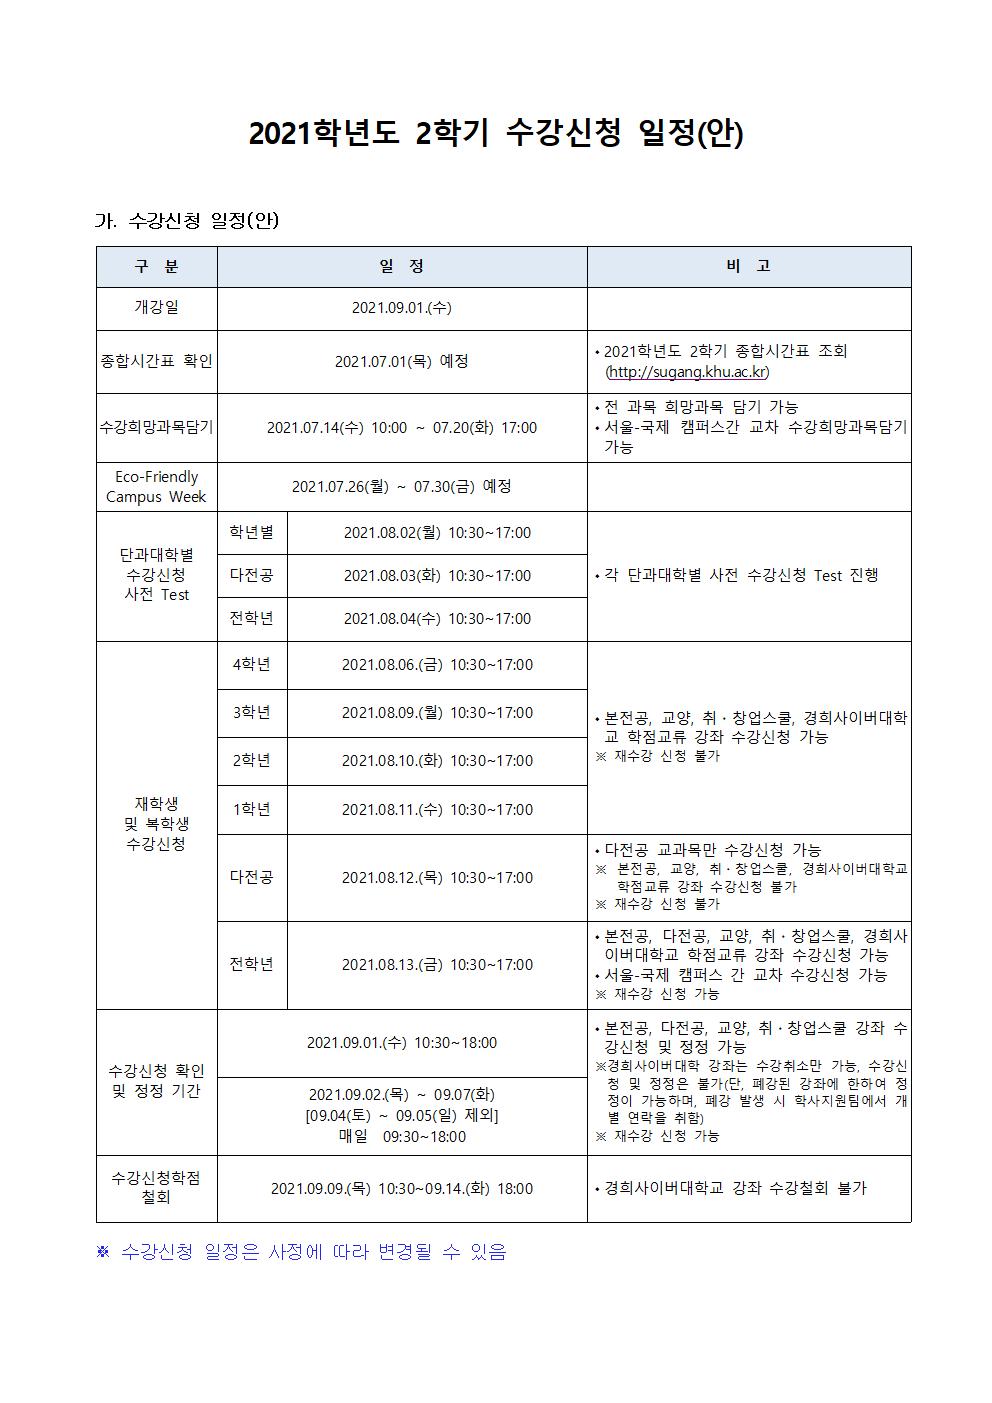 [붙임] 2021-2학기 수강신청일정(안)_공지문001.jpg